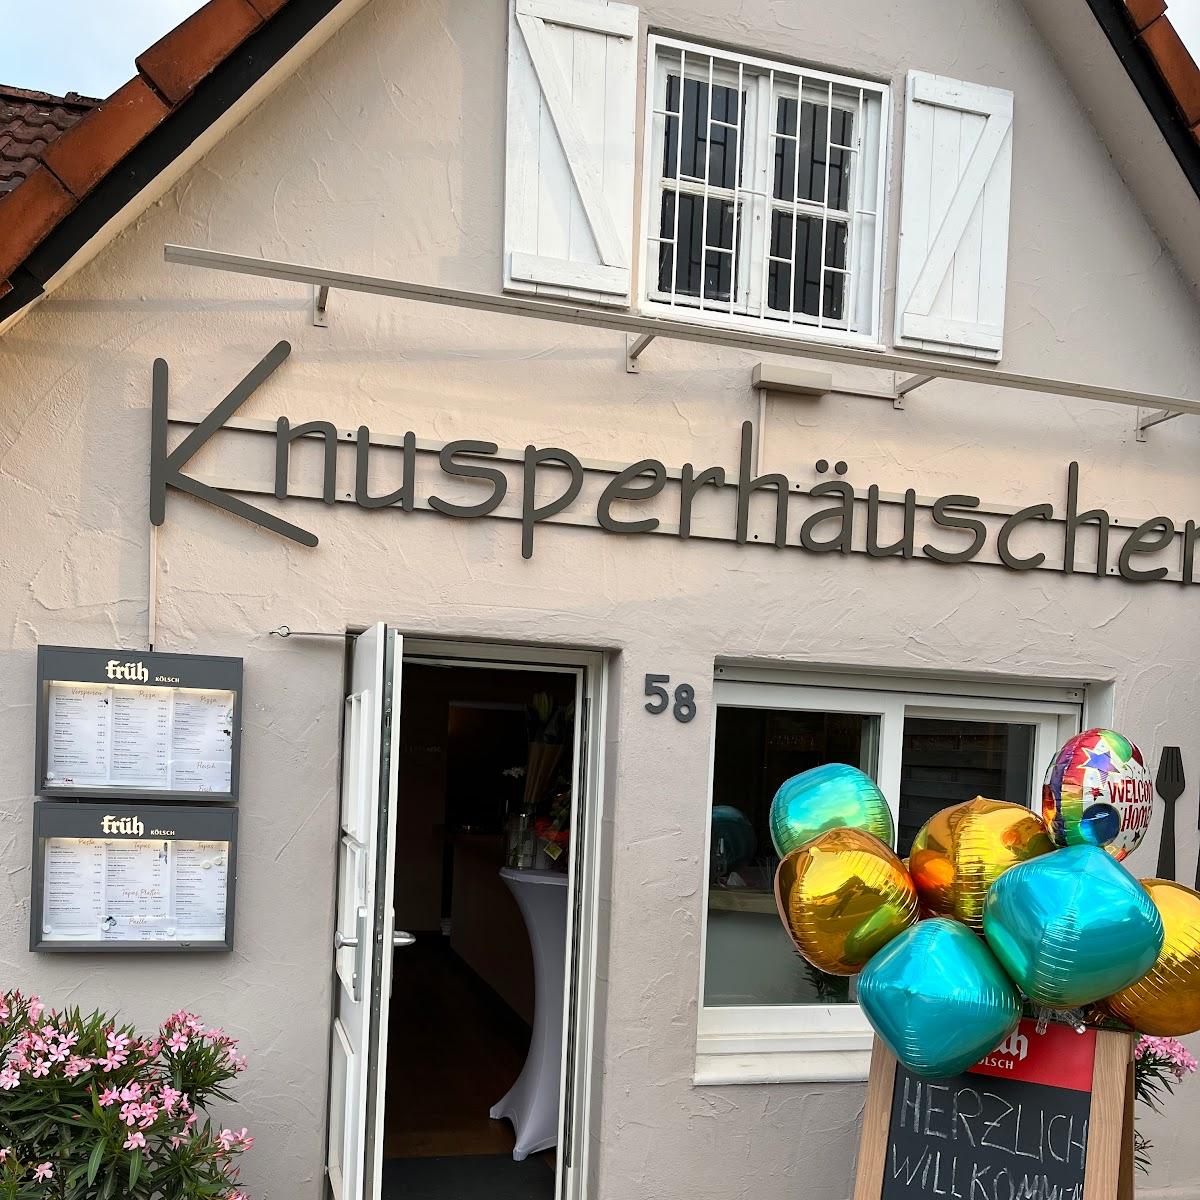 Restaurant "Restaurant Knusperhäuschen" in Sankt Augustin